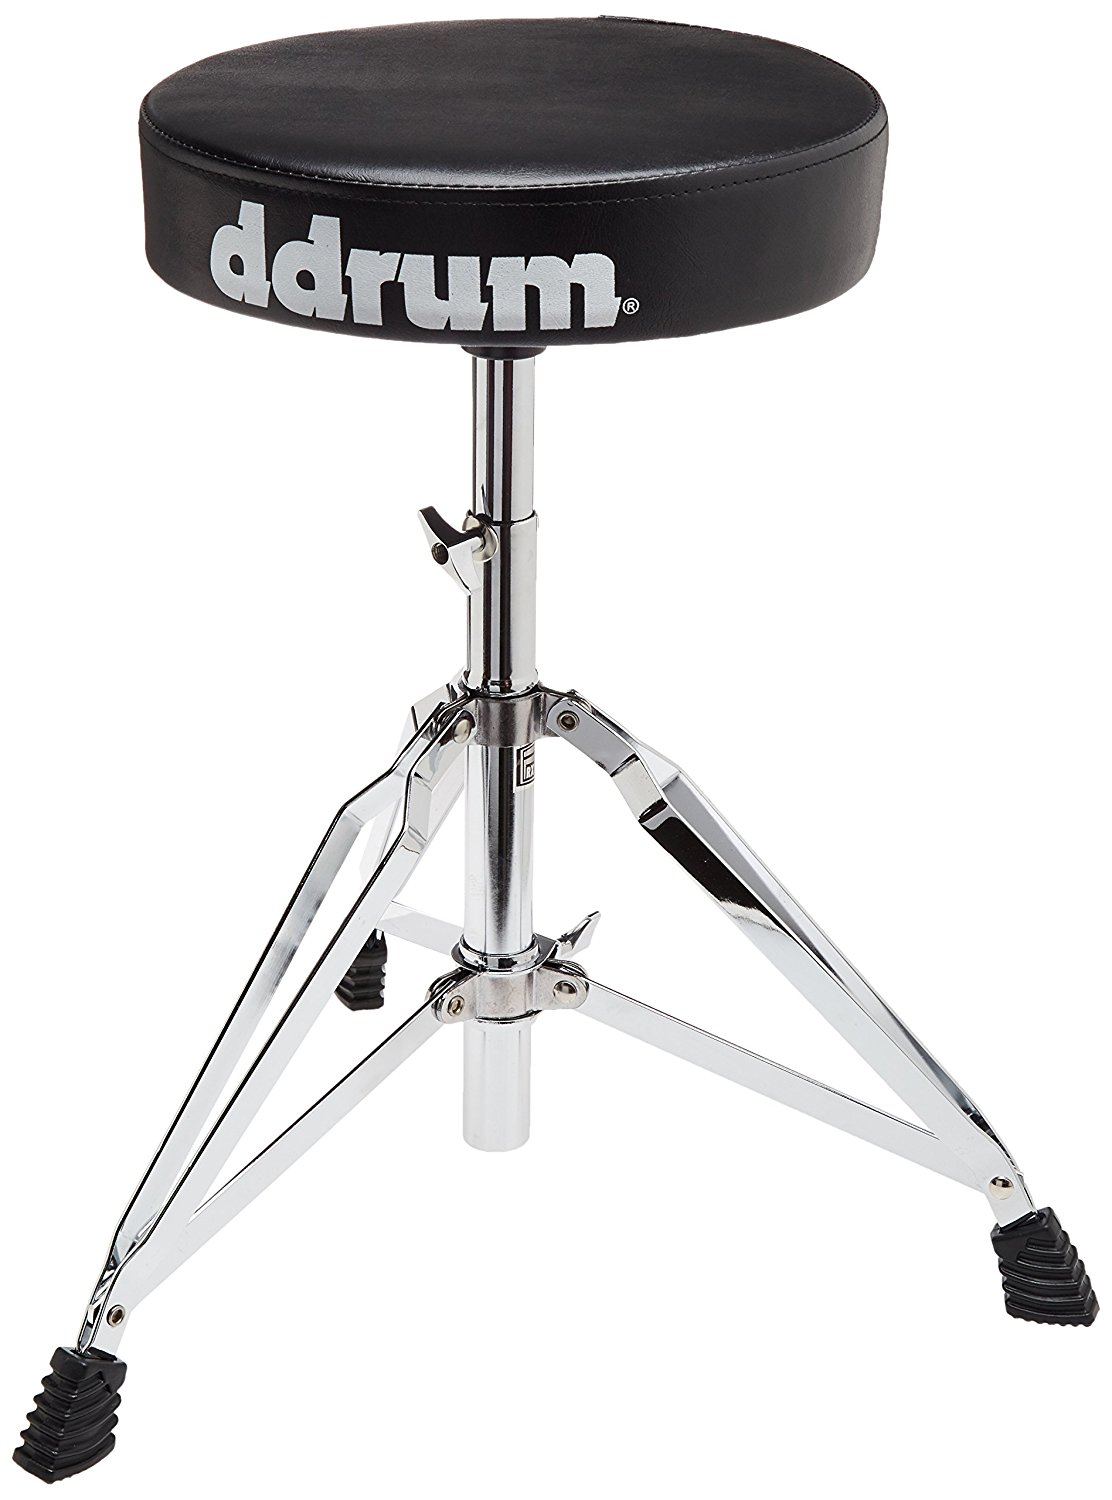 DDRUM RXDT - стул для барабанщика